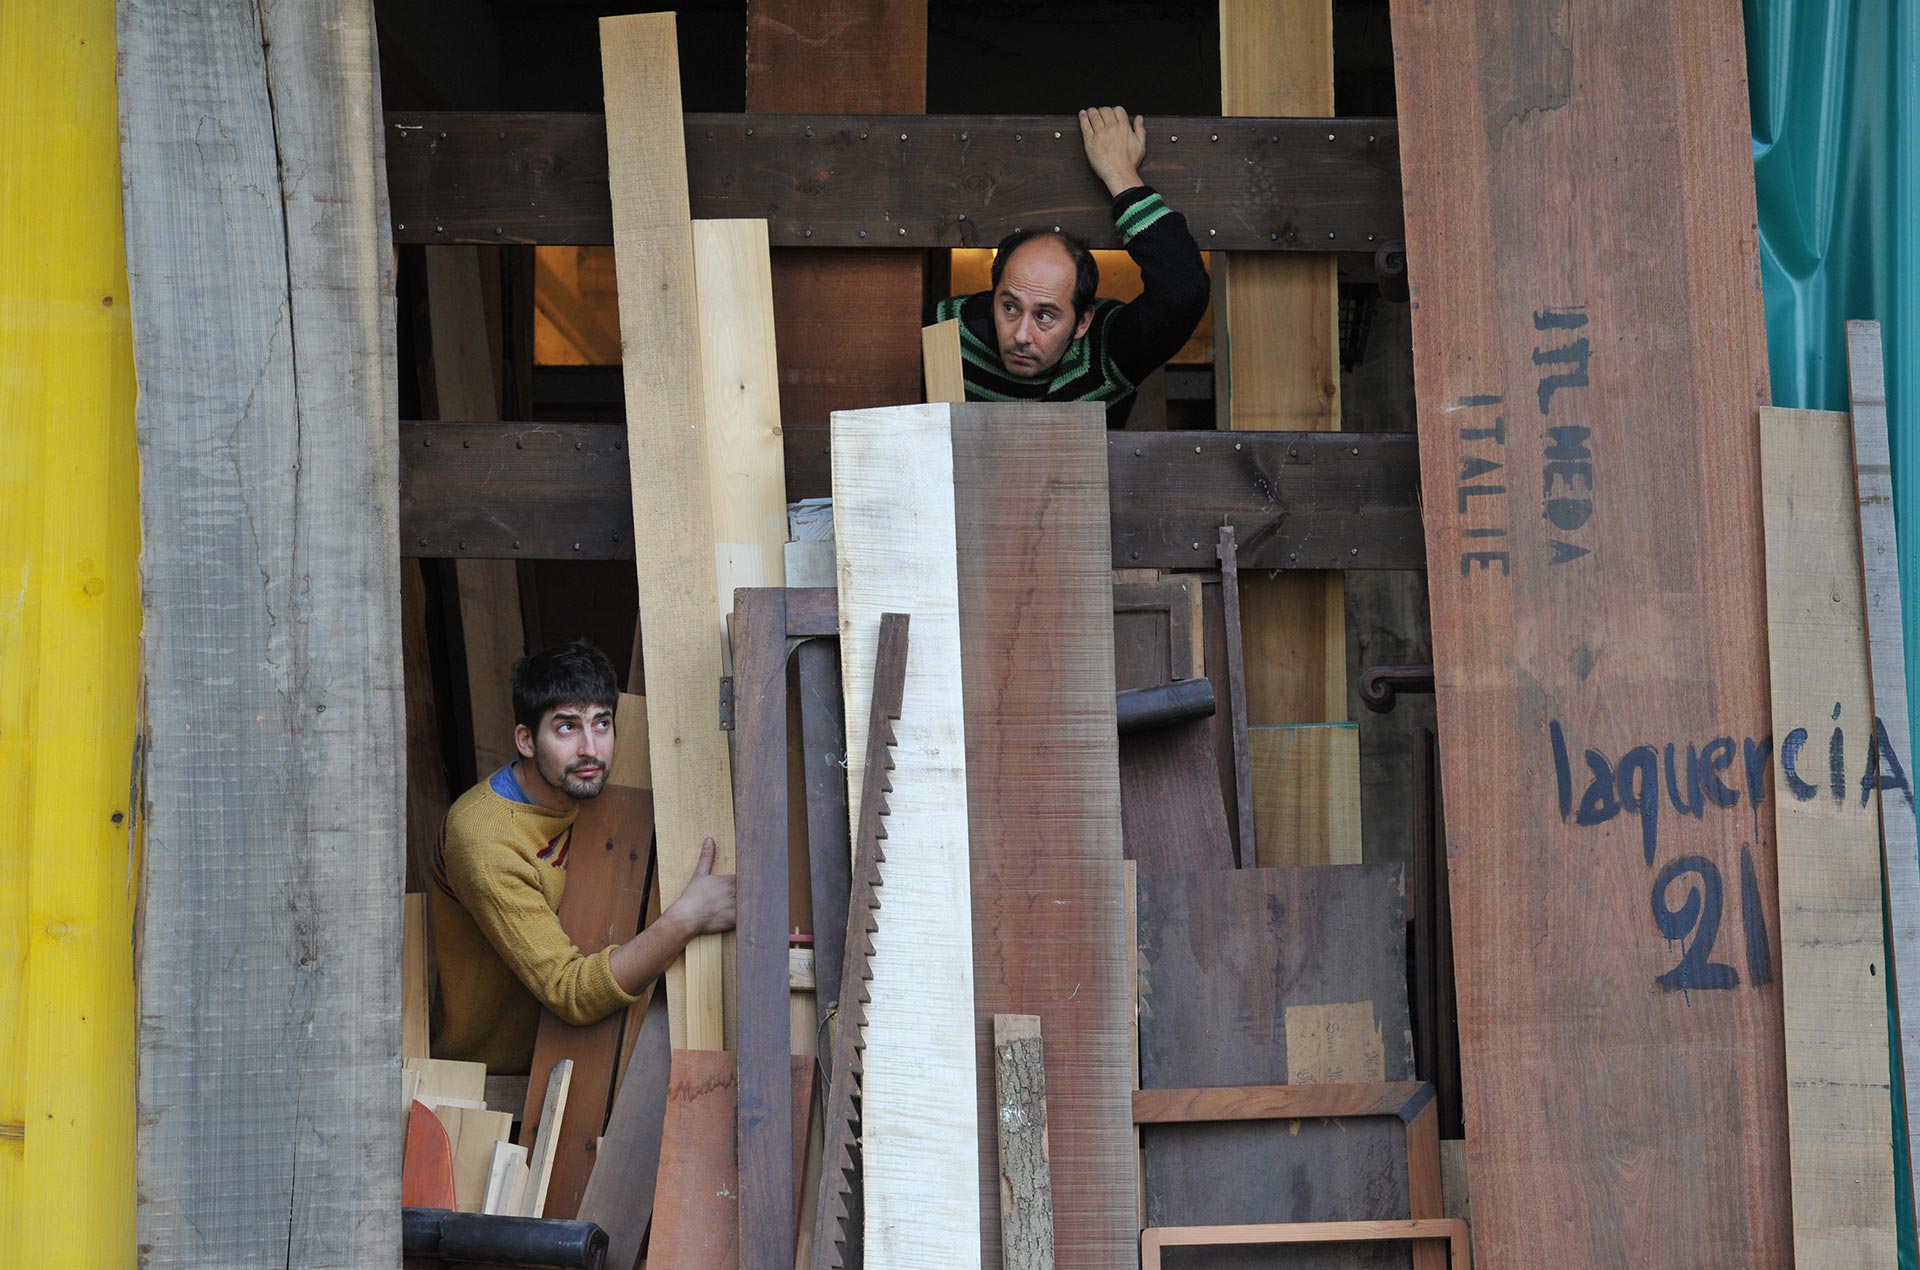 Nicola Gubbiotti e Luca De Pascalis che giocano tra i legni di recupero della falegnameria artigianale Laquercia21